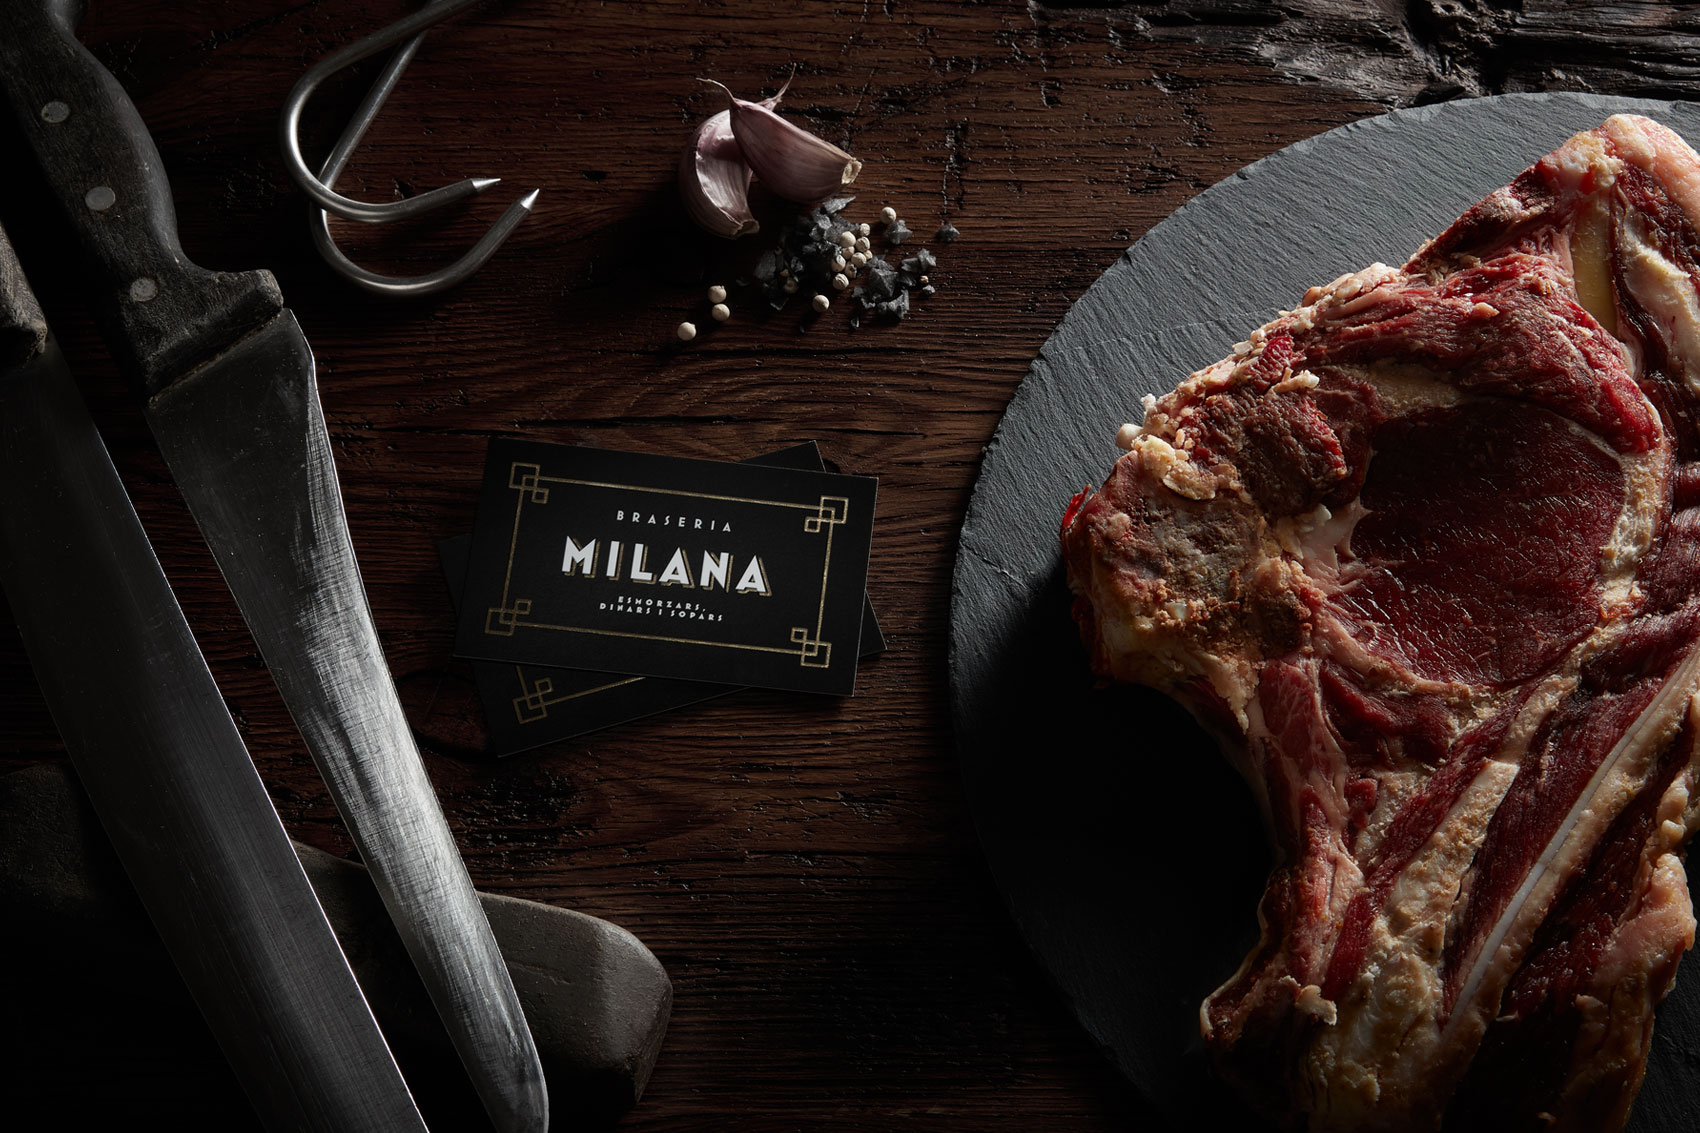 Tarjetas de visita con nuevo logo del restaurante Braseria La Milana junto a chuletón y cuchillo